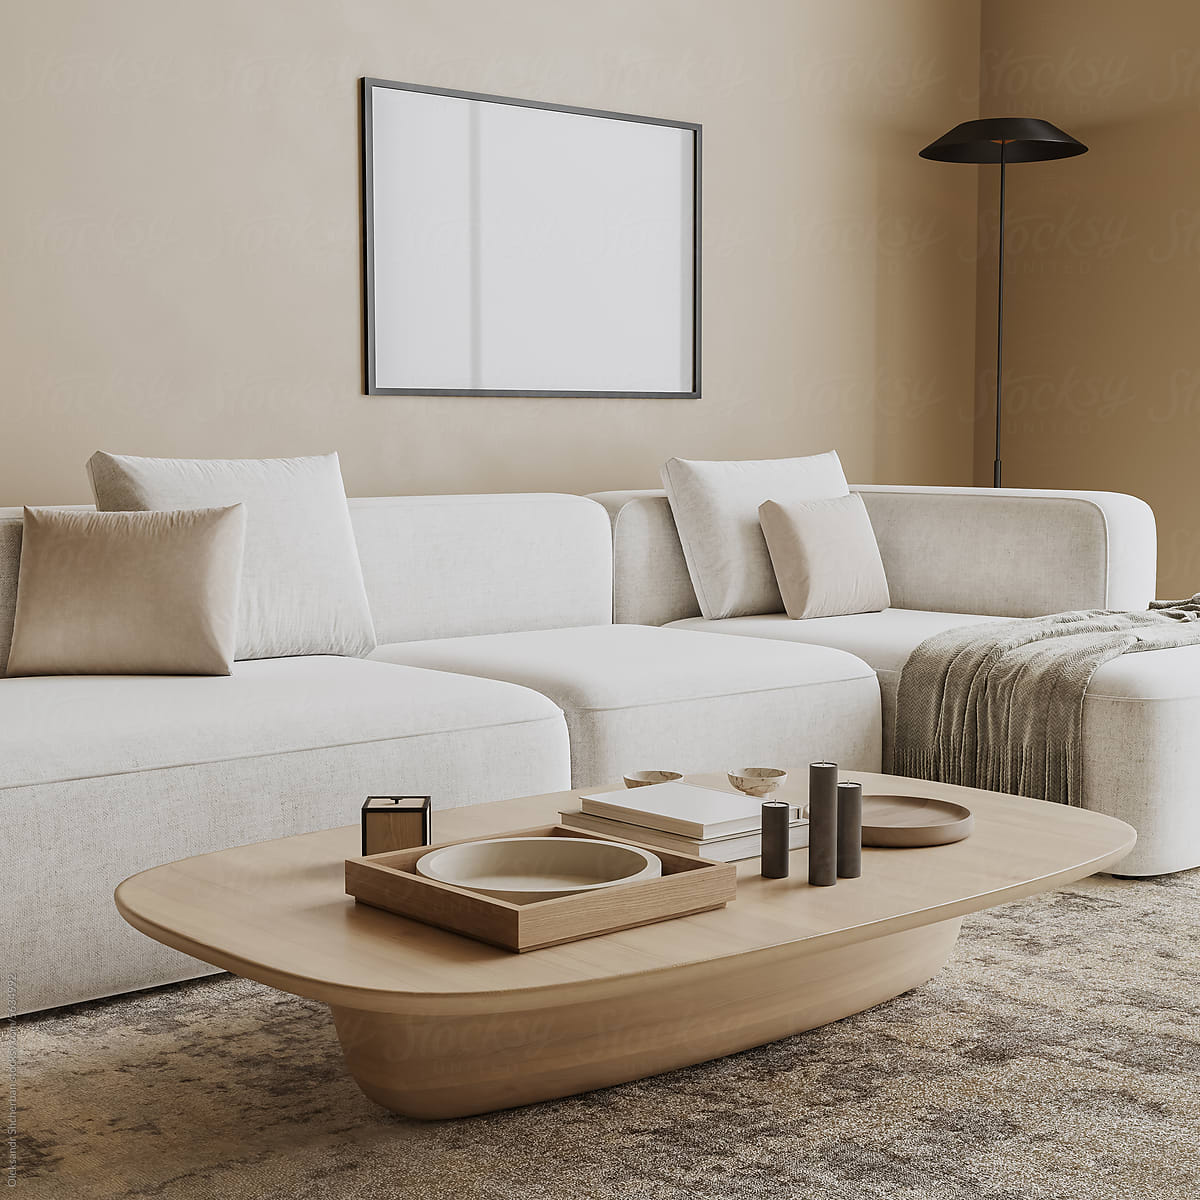 blank picture frame mock up in modern living room interior, 3d render